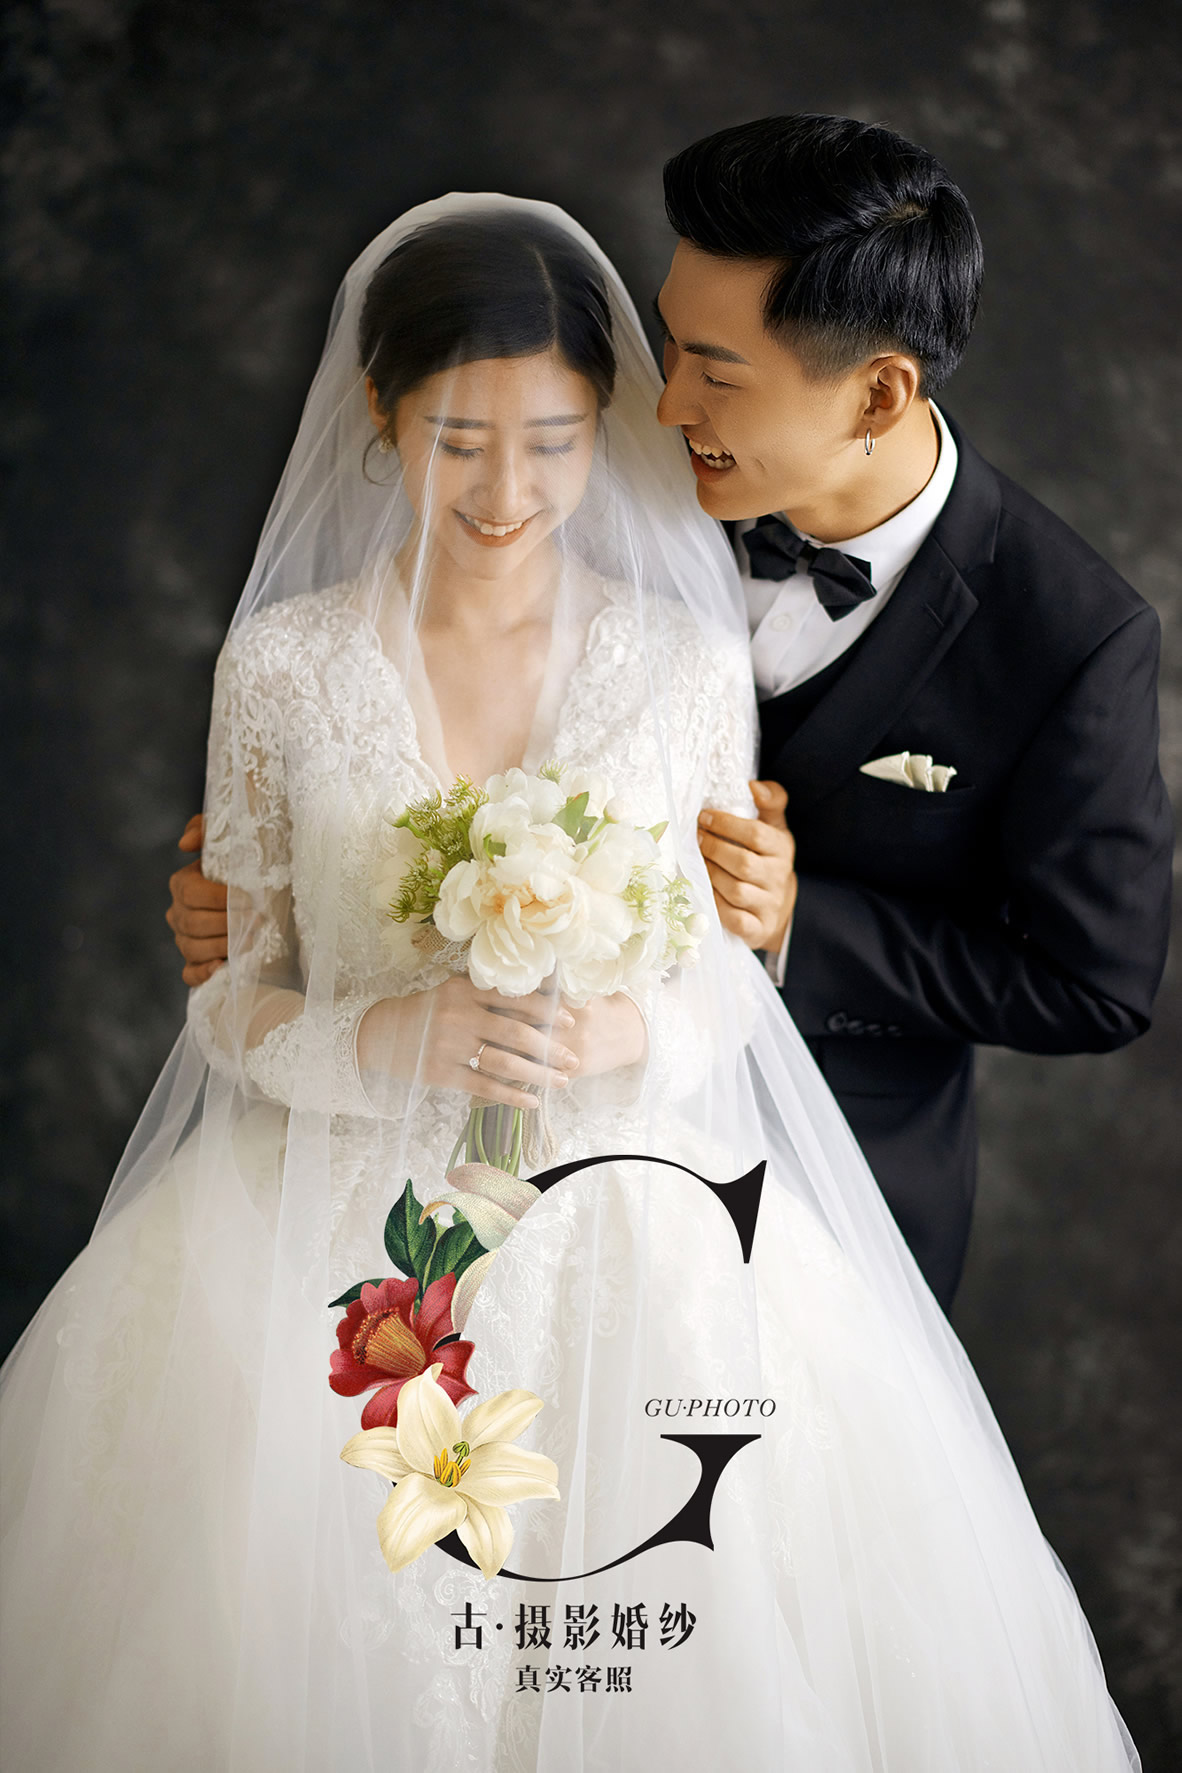 韩式水晶婚礼 - 主题婚礼 - 婚礼图片 - 婚礼风尚